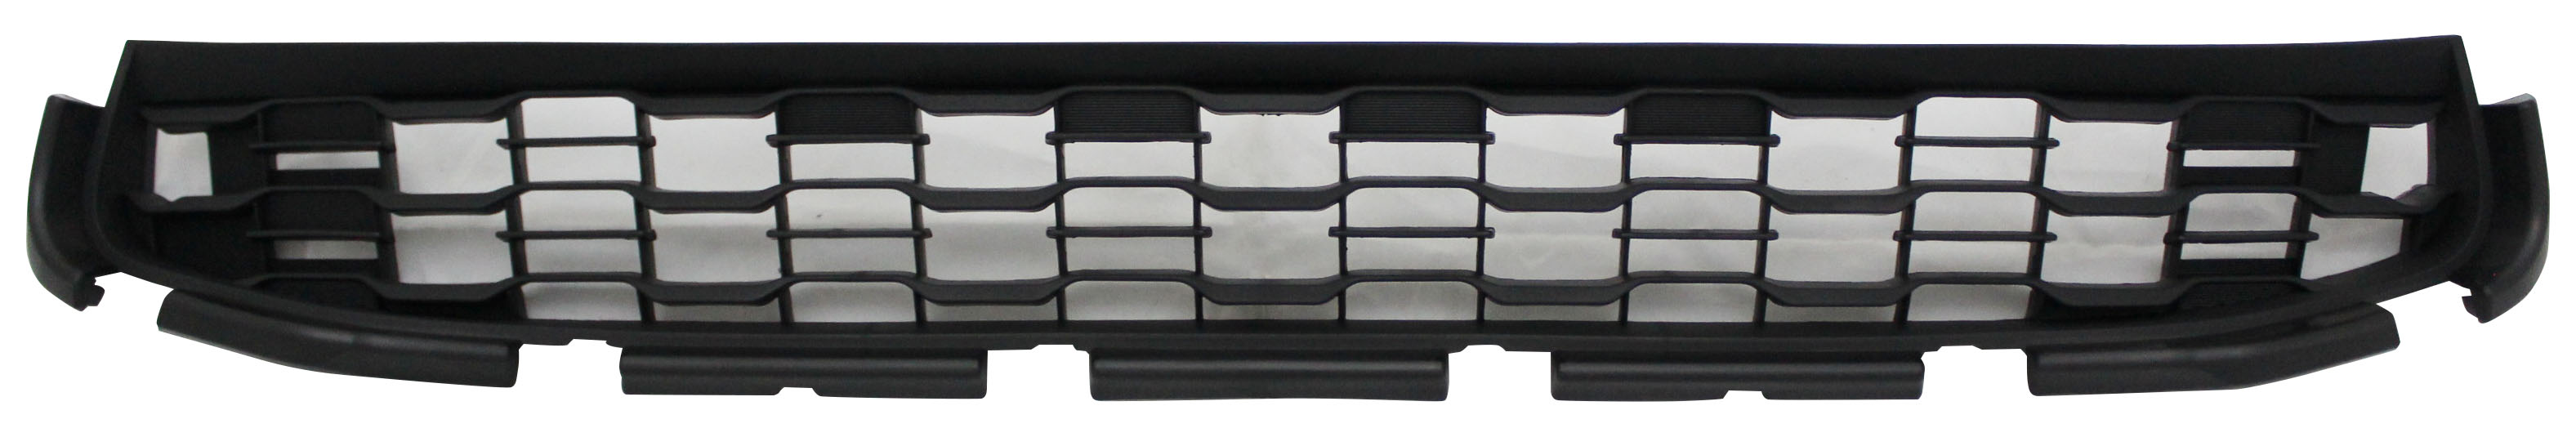 Aftermarket GRILLES for MITSUBISHI - RVR, RVR,13-15,Front bumper grille